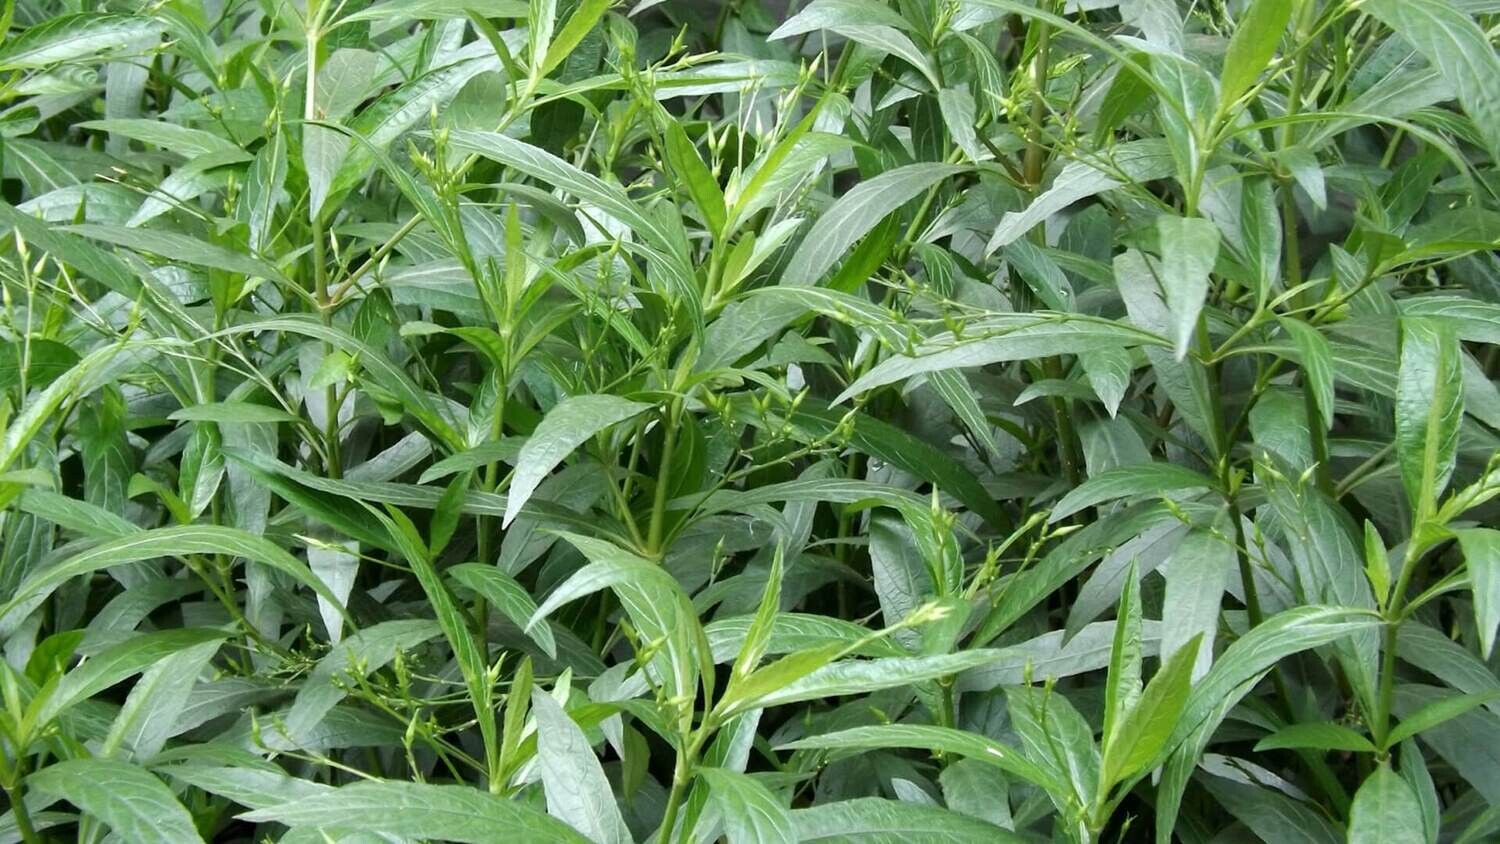 Organic Nila-Vembu / Kalmegh / Kalamegha / Andrographis paniculata Plants